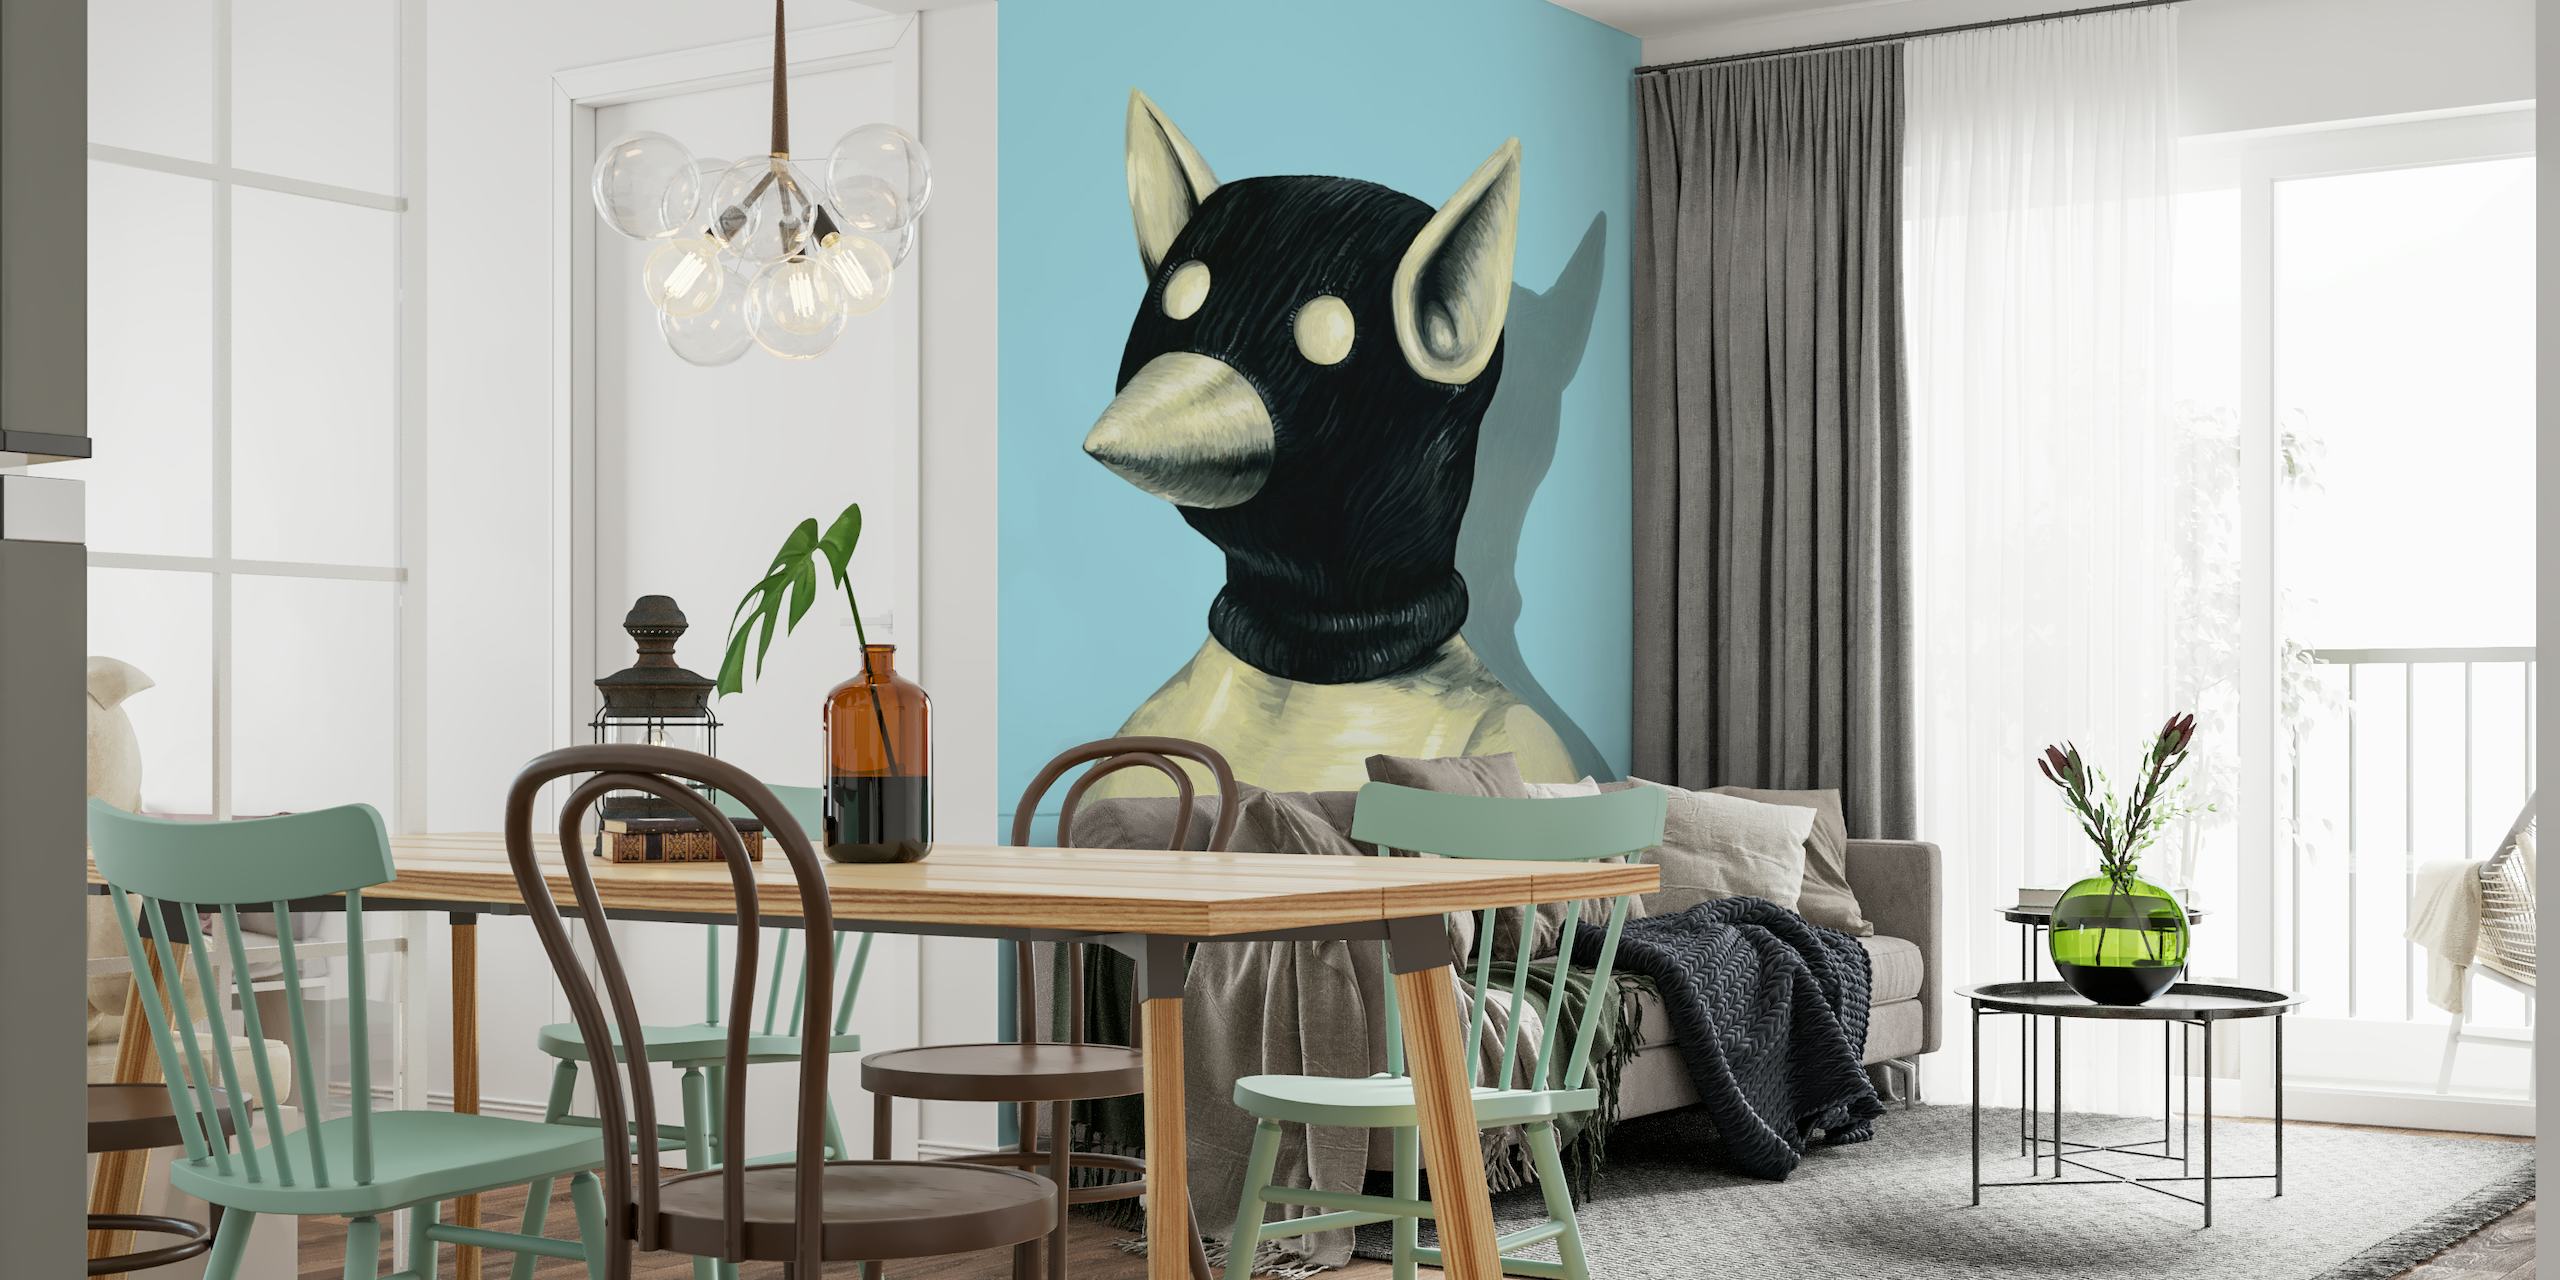 Grillige Bandit Hat muurschildering met gestileerde zwarte hoedenfiguur op een blauwe achtergrond